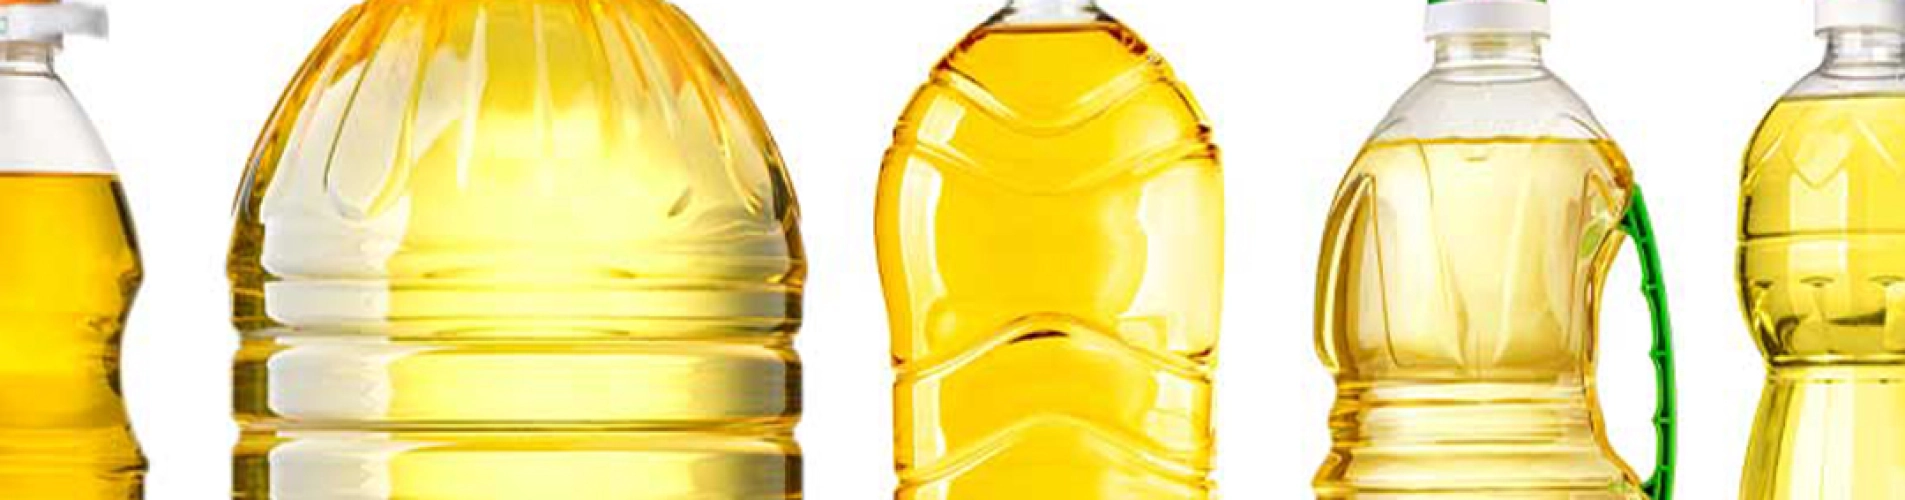 بطری های شفاف و غیر شفاف روغن های خوراکی چه تفاوتی با یکدیگر دارند؟